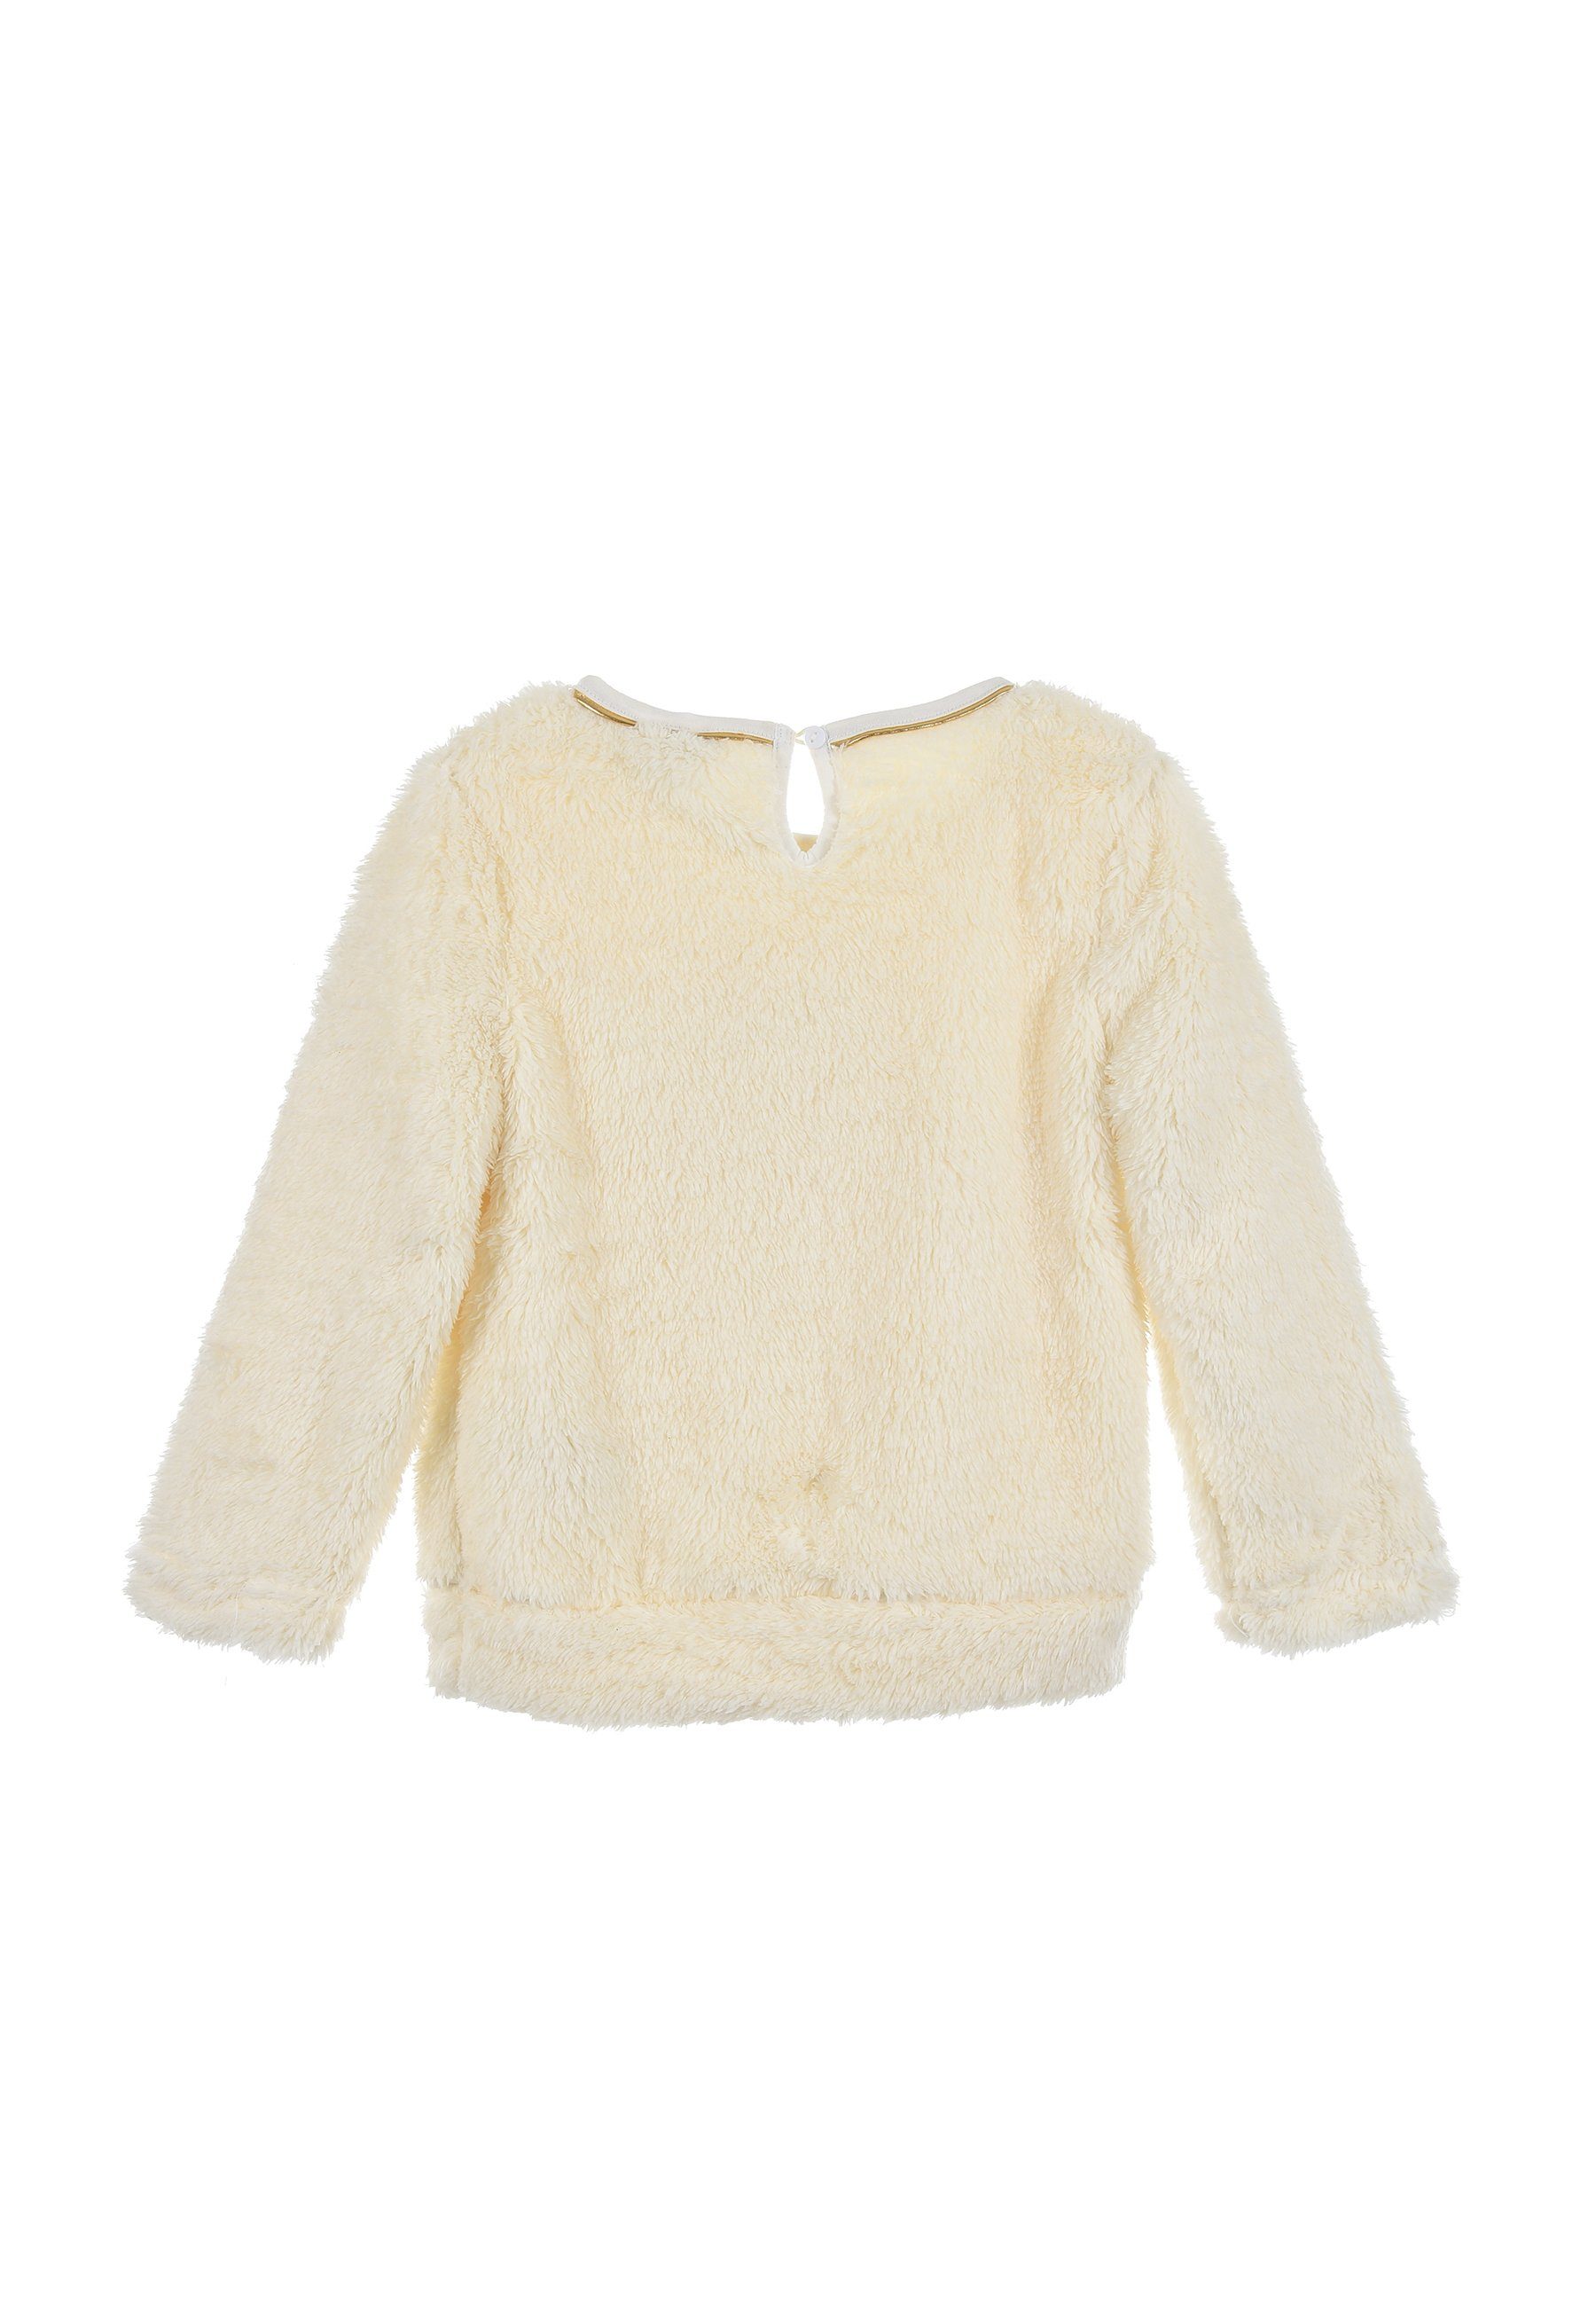 Sweater Pullover Kinder Beige Pailletten Mädchen mit Disney Mini Fleece Minnie Sweatshirt Mouse Maus